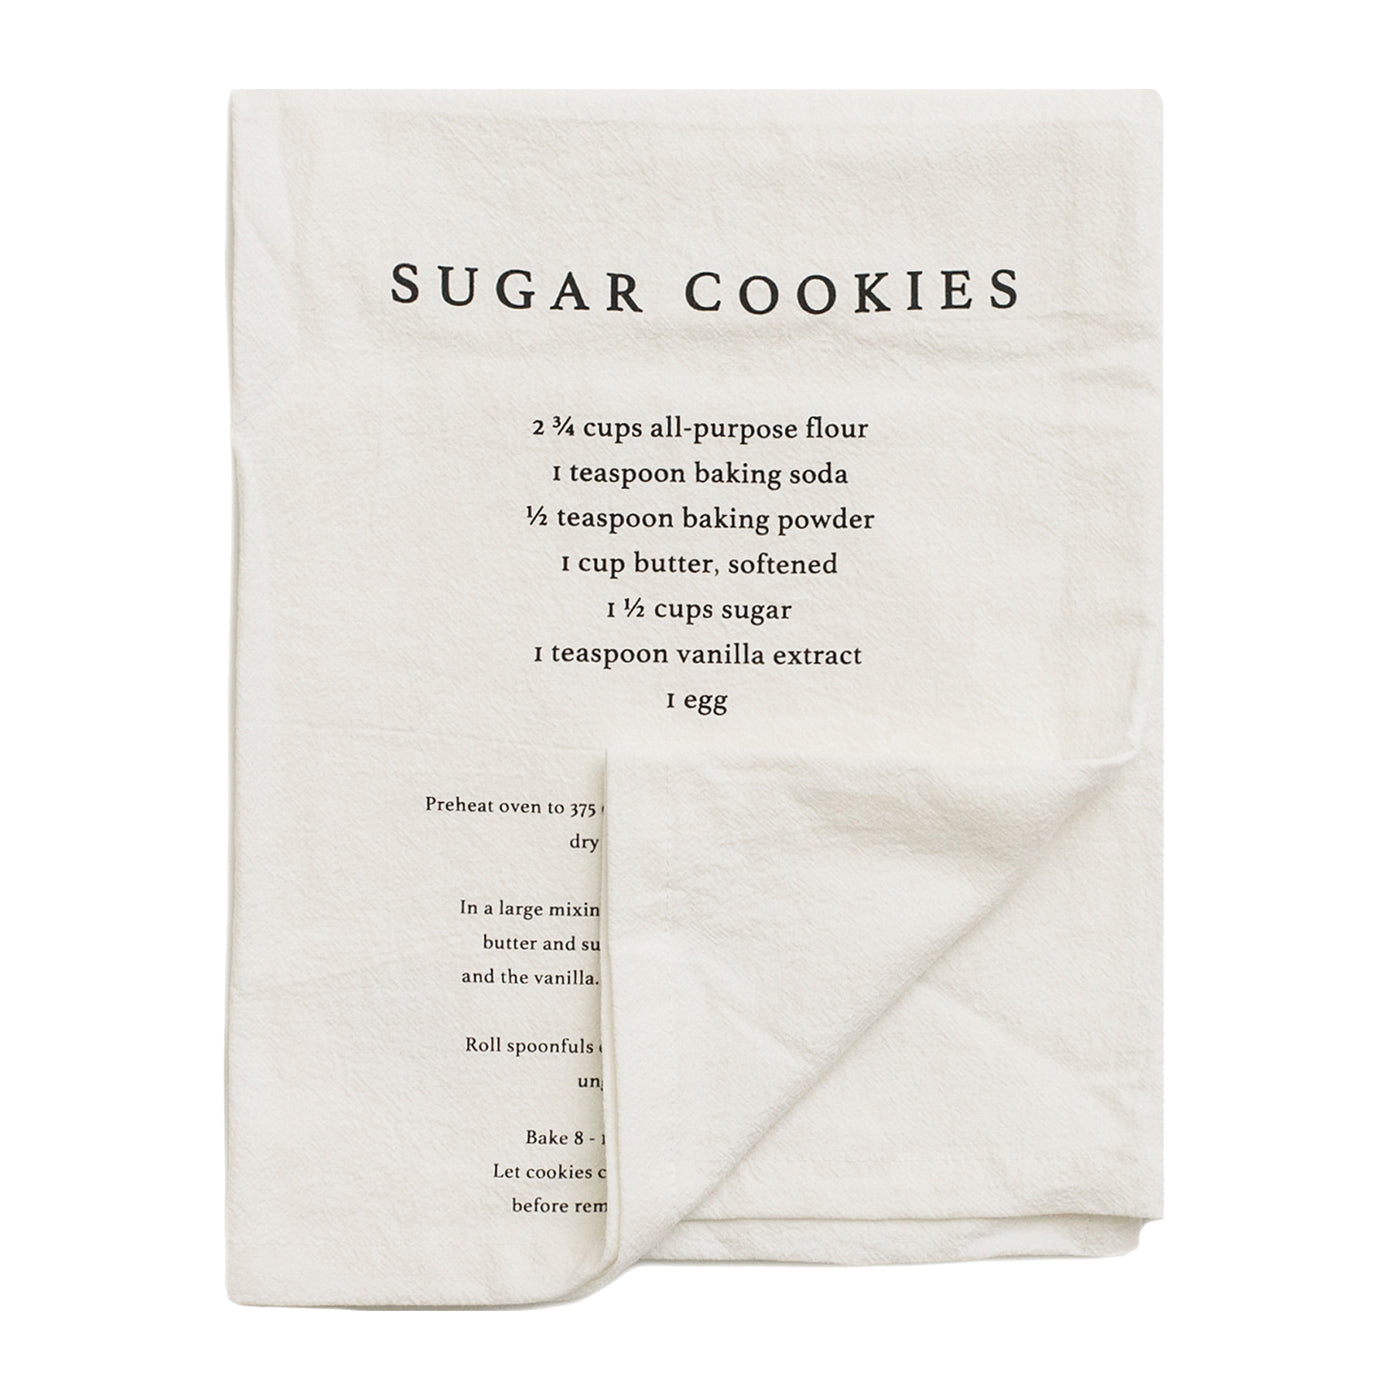 Sugar Cookies Tea Towel - Sweet Water Decor - Hand Towels